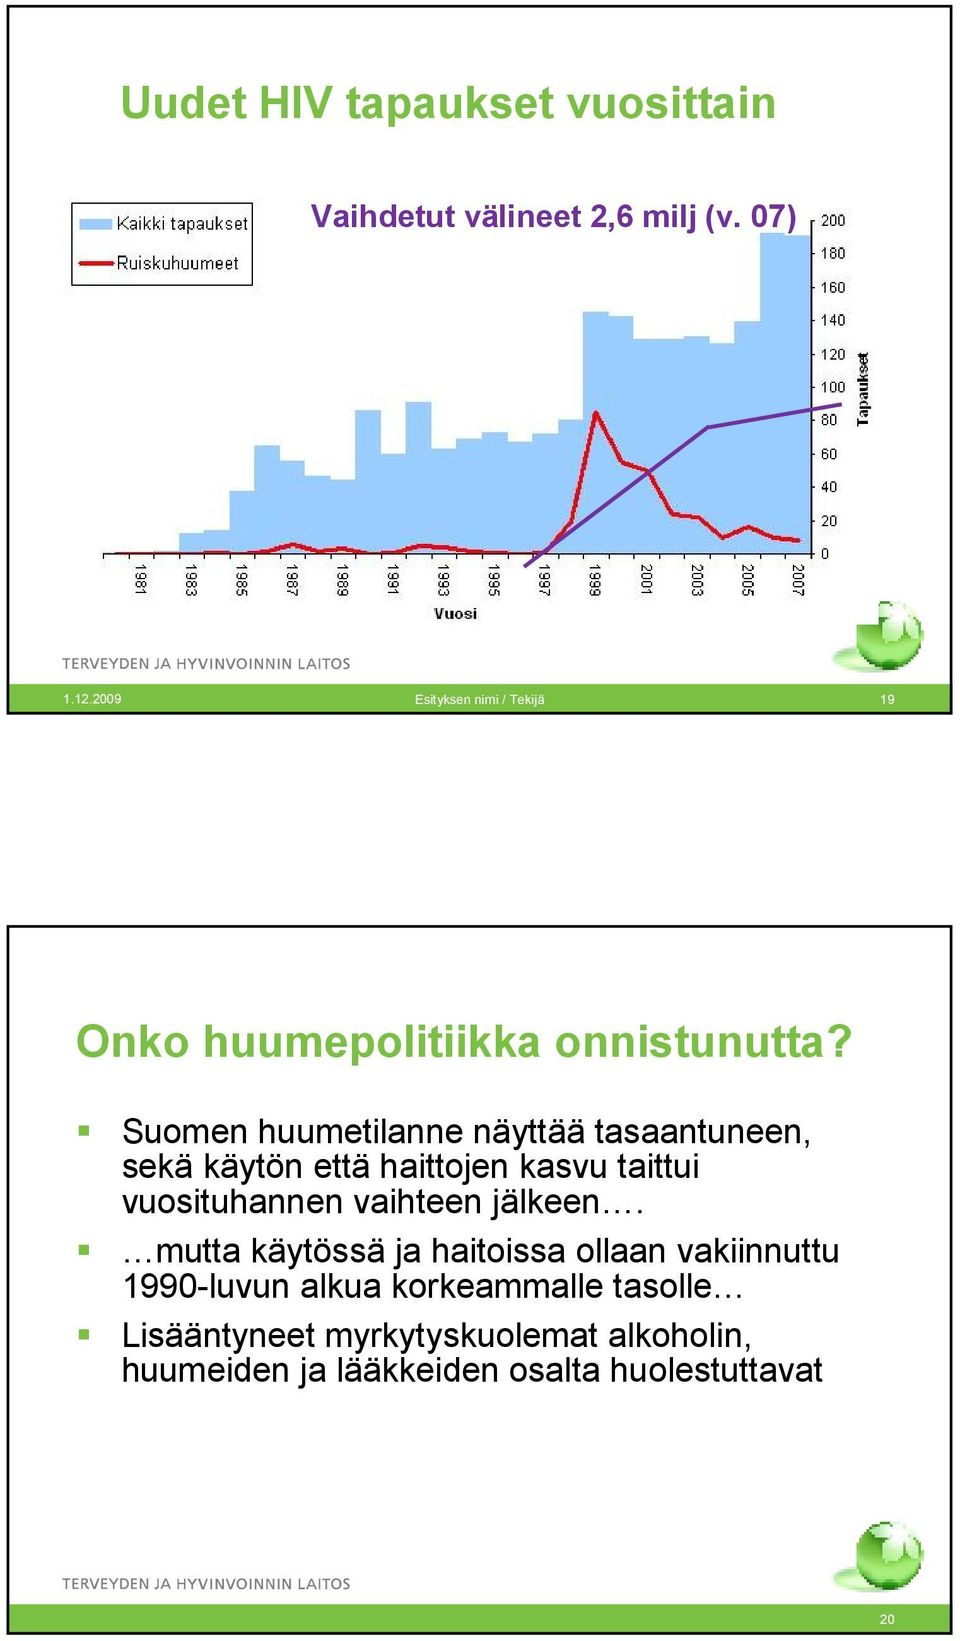 Suomen huumetilanne näyttää tasaantuneen, sekä käytön että haittojen kasvu taittui vuosituhannen vaihteen